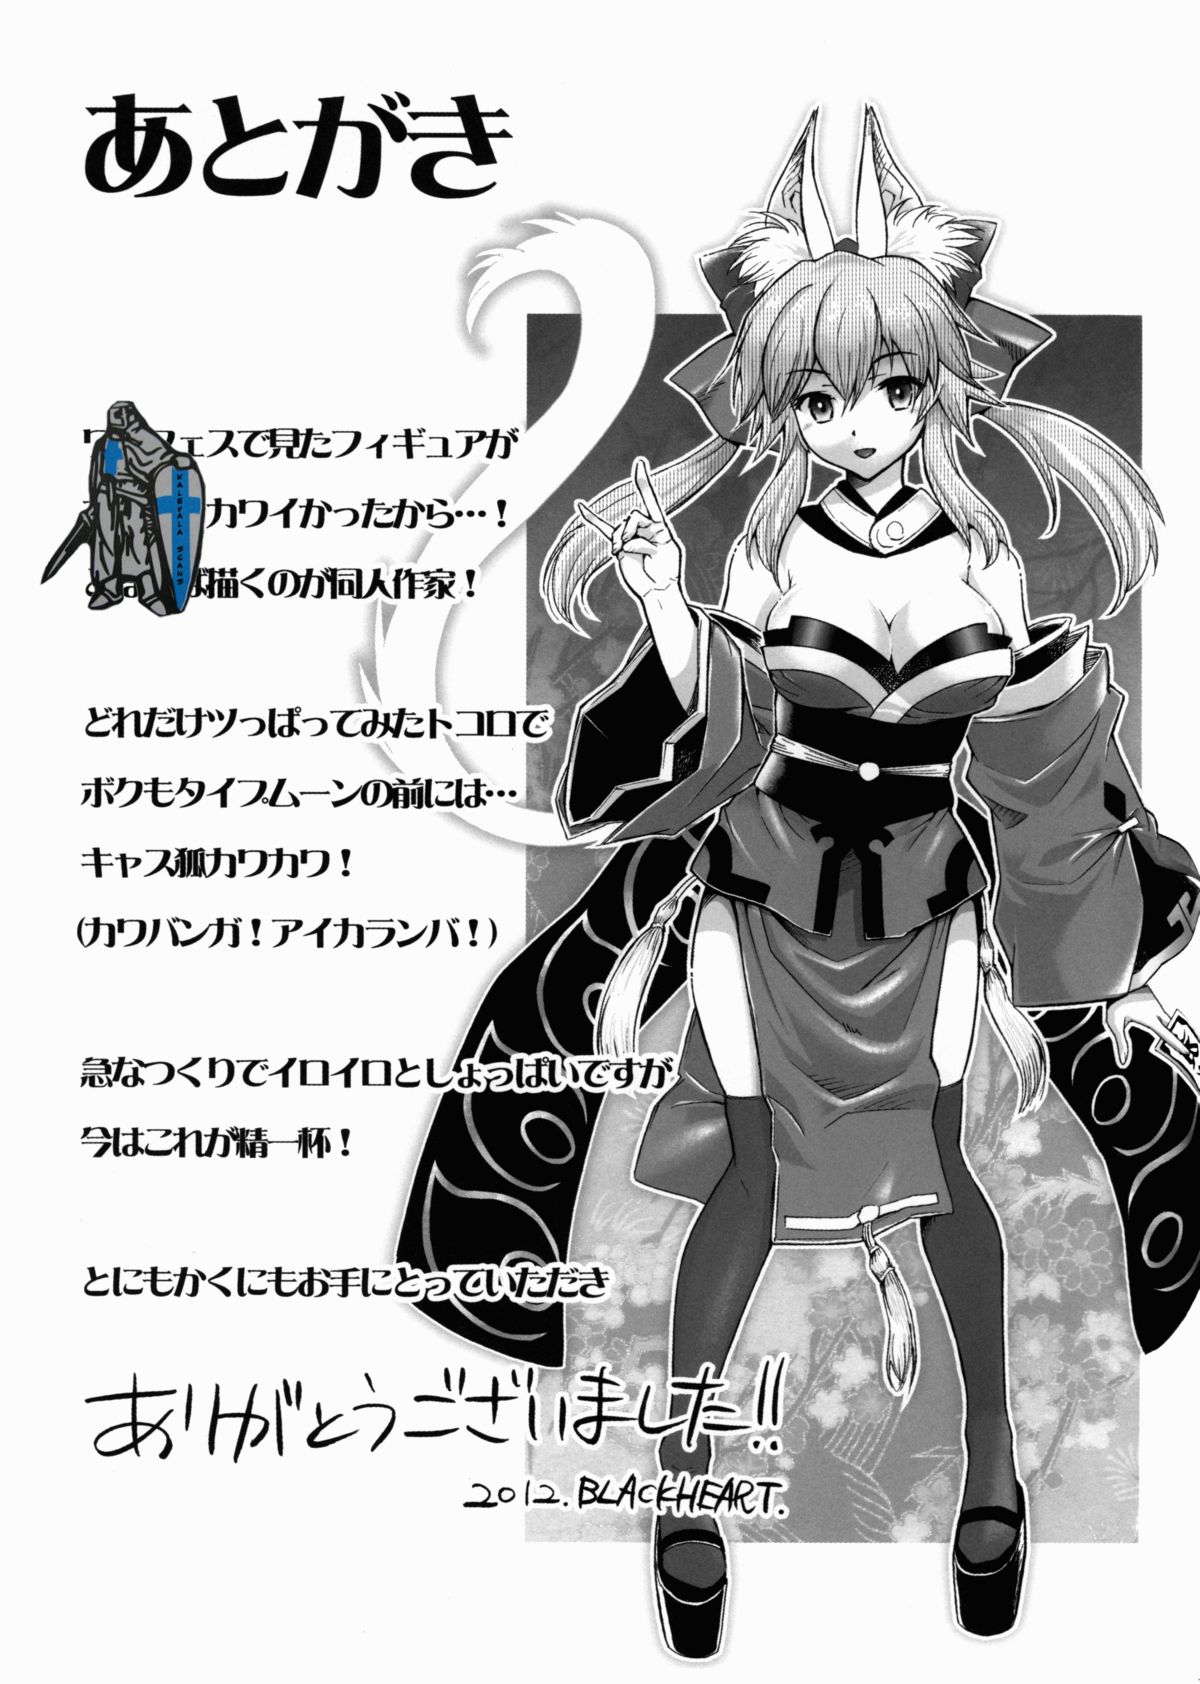 (COMIC1☆6) [ヘタレアーツ (BLACKHEART)] 21世紀 ふぉっくす (Fate/Extra)